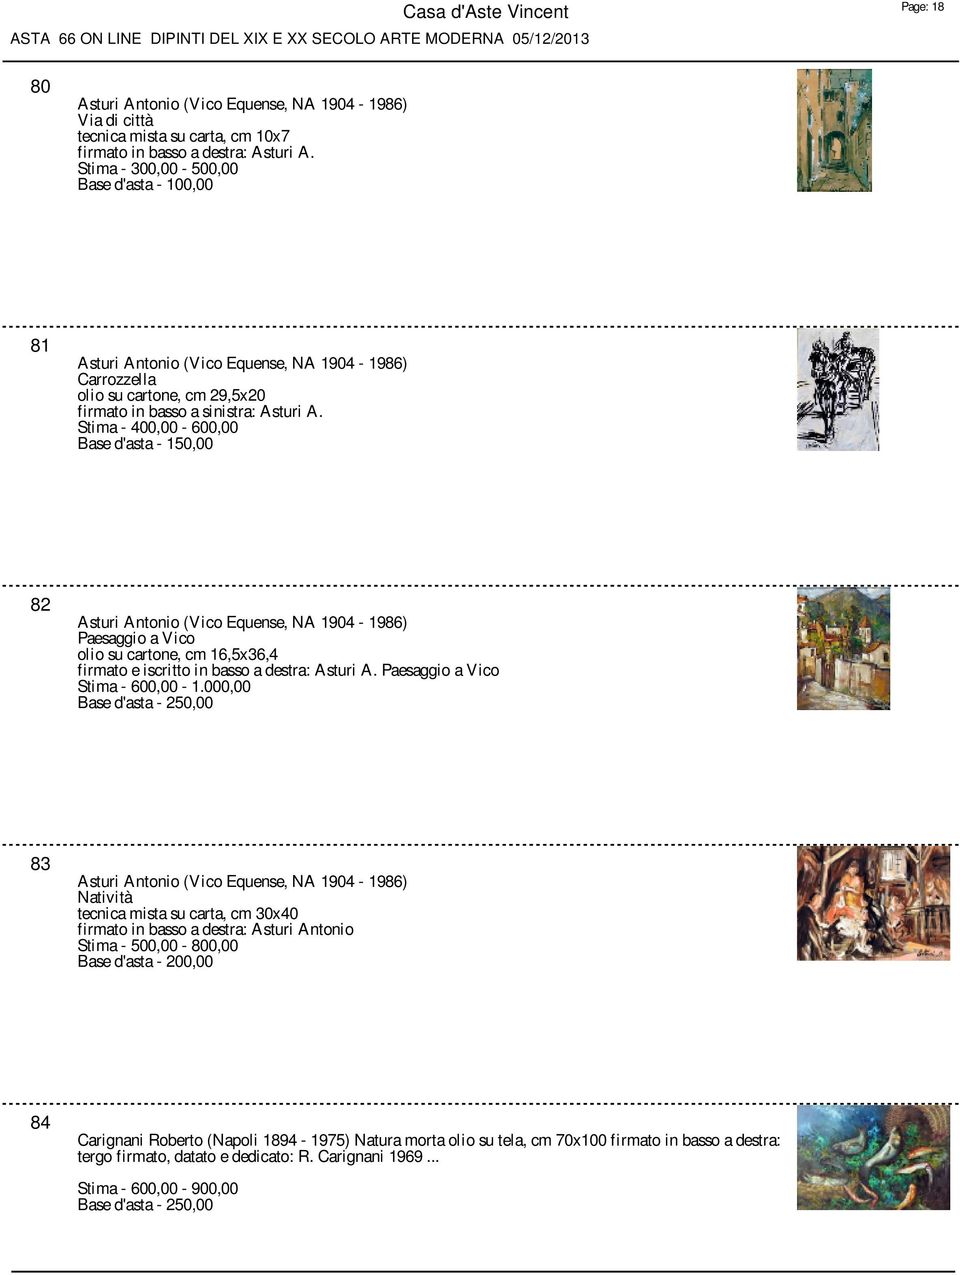 82 Asturi Antonio (Vico Equense, NA 1904-1986) Paesaggio a Vico olio su cartone, cm 16,5x36,4 firmato e iscritto in basso a destra: Asturi A. Paesaggio a Vico Stima - 600,00-1.